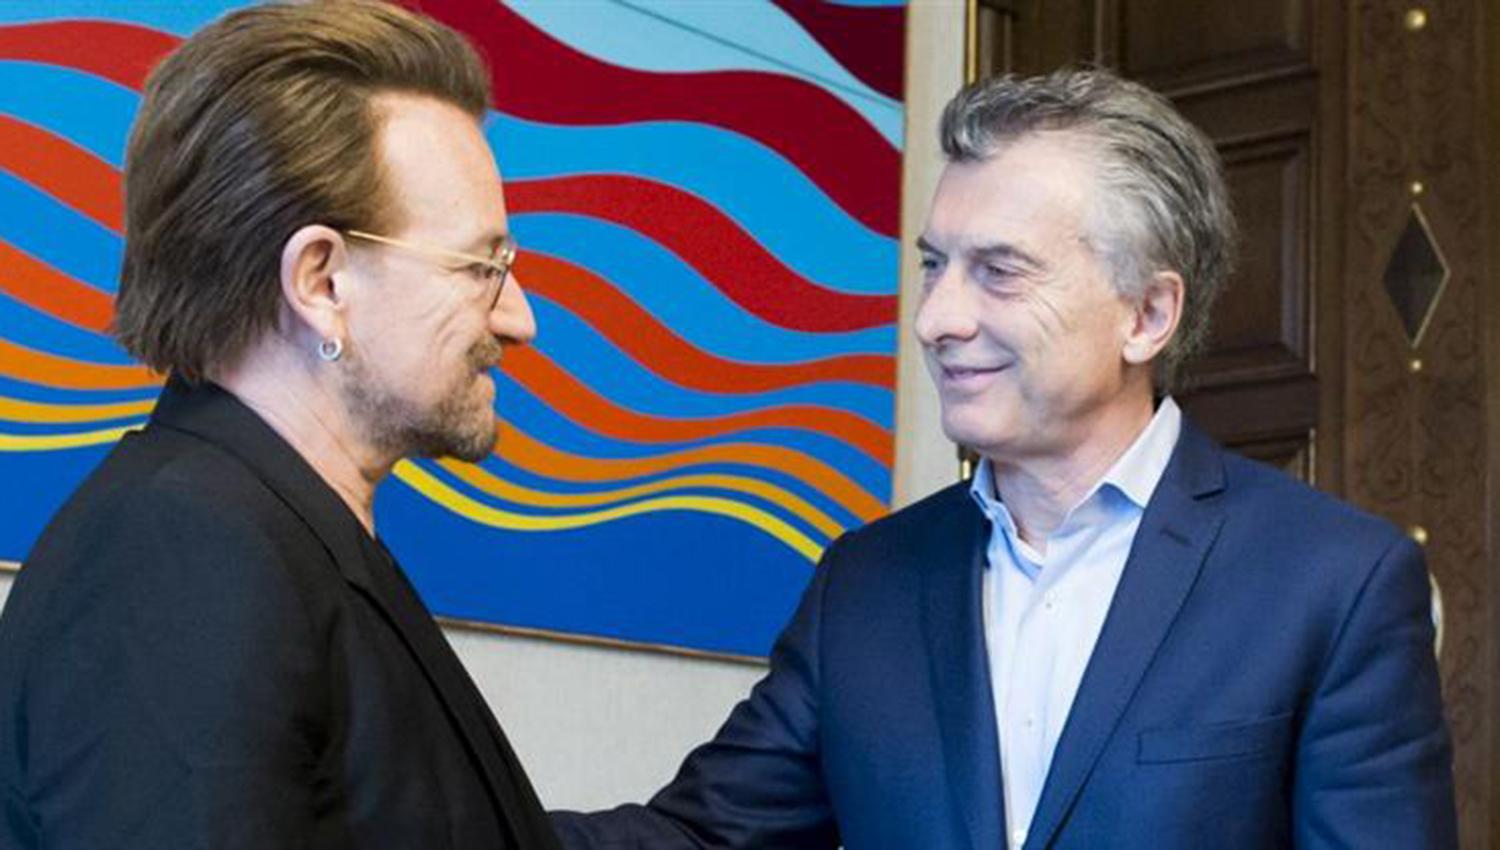 DISTENDIDOS. Tras reunirse con Macri, Bono se retiró de la Casa Rosada sin formular declaraciones a la prensa. FOTO TOMADA DE AMBITO.COM